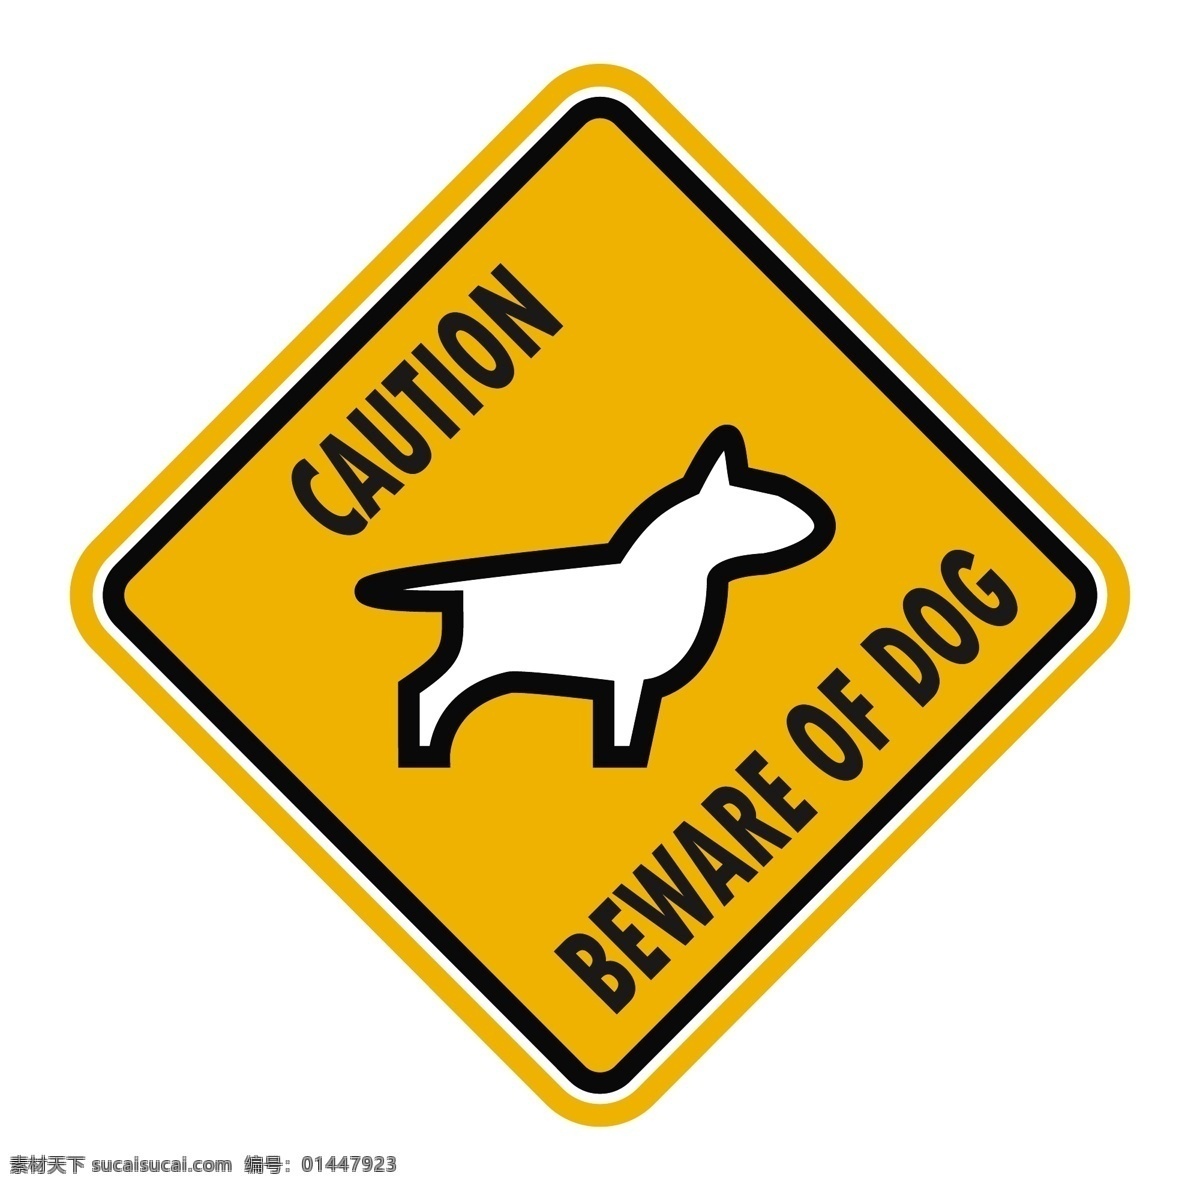 危险图标 危险标志 有狗咬人 警示图标 警示标志 danger 危险物品 危险品 企业 logo 标志 标志图标